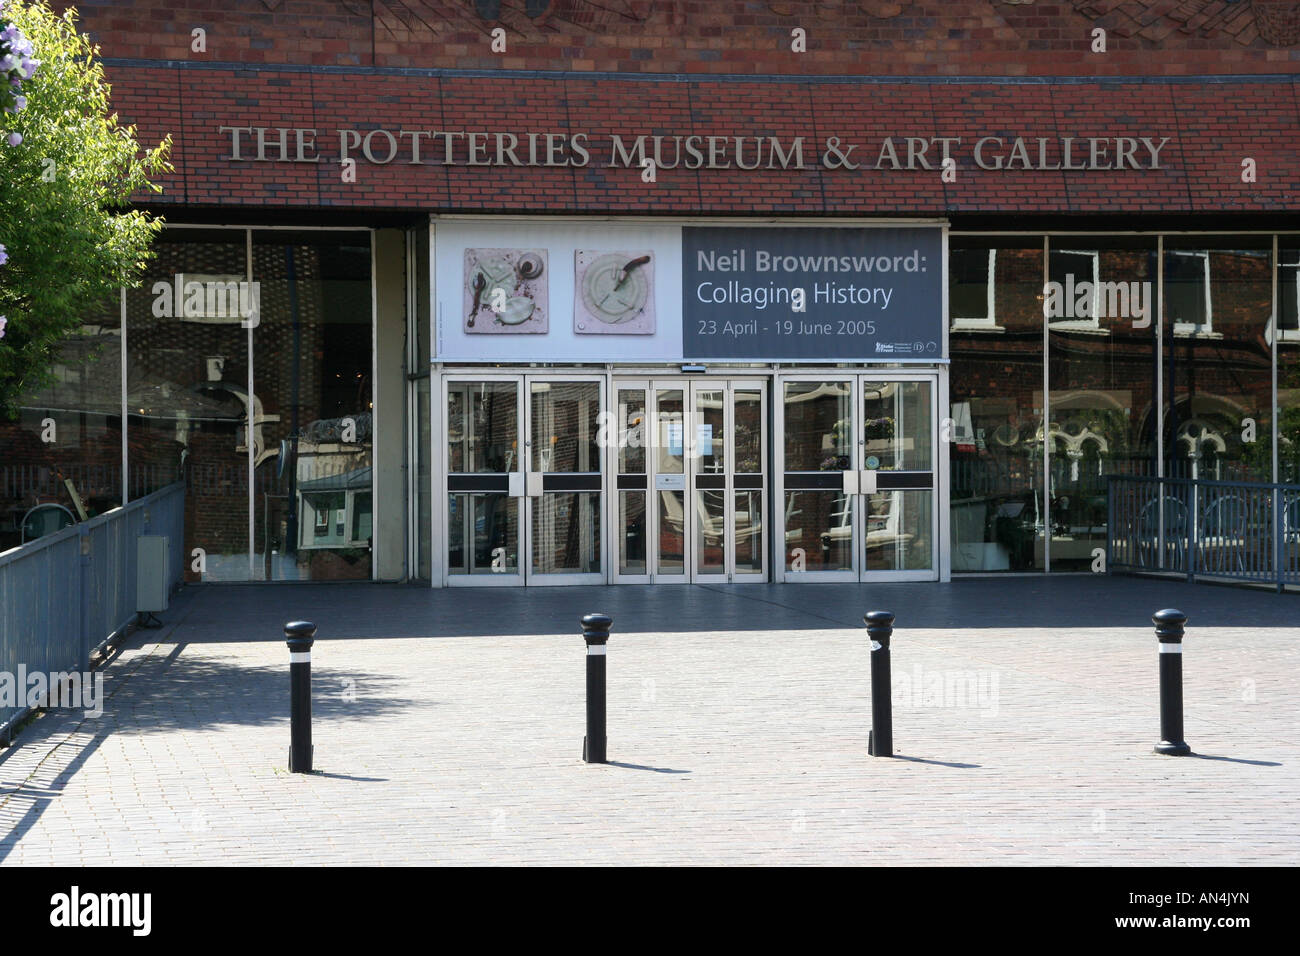 Das Potteries Museum und die Kunstgalerie stoke on-Trent die Töpfereien Midlands Industriestadt England uk gb Stockfoto